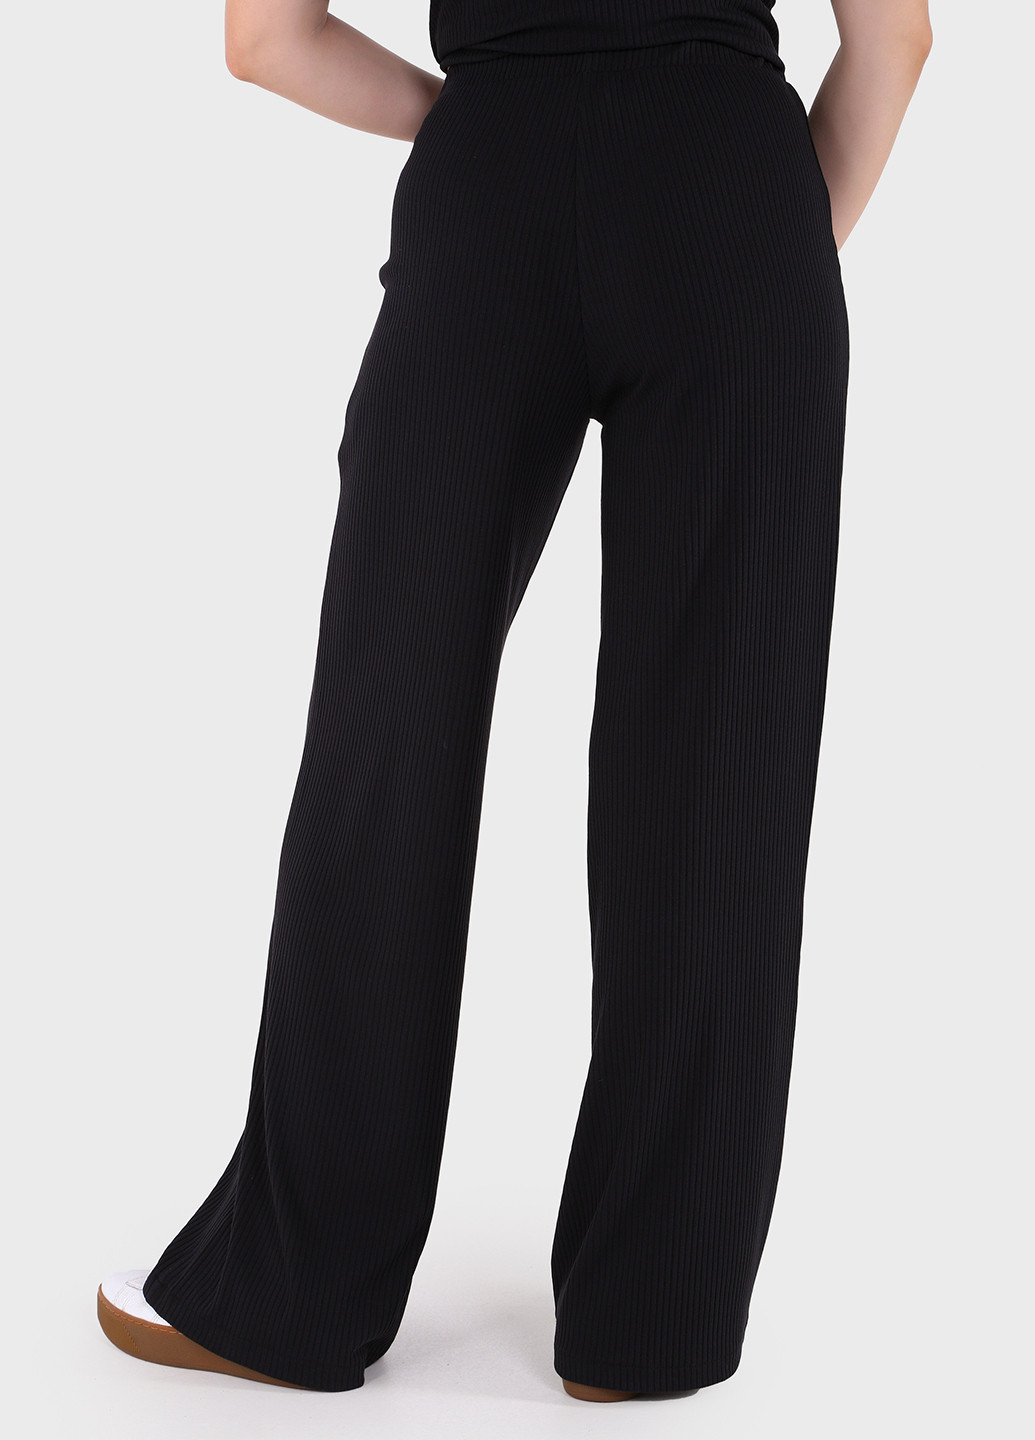 Жіночі штани кльош в рубчик чорного кольору Амаранті 600000067 Merlini амаранти (257533439)